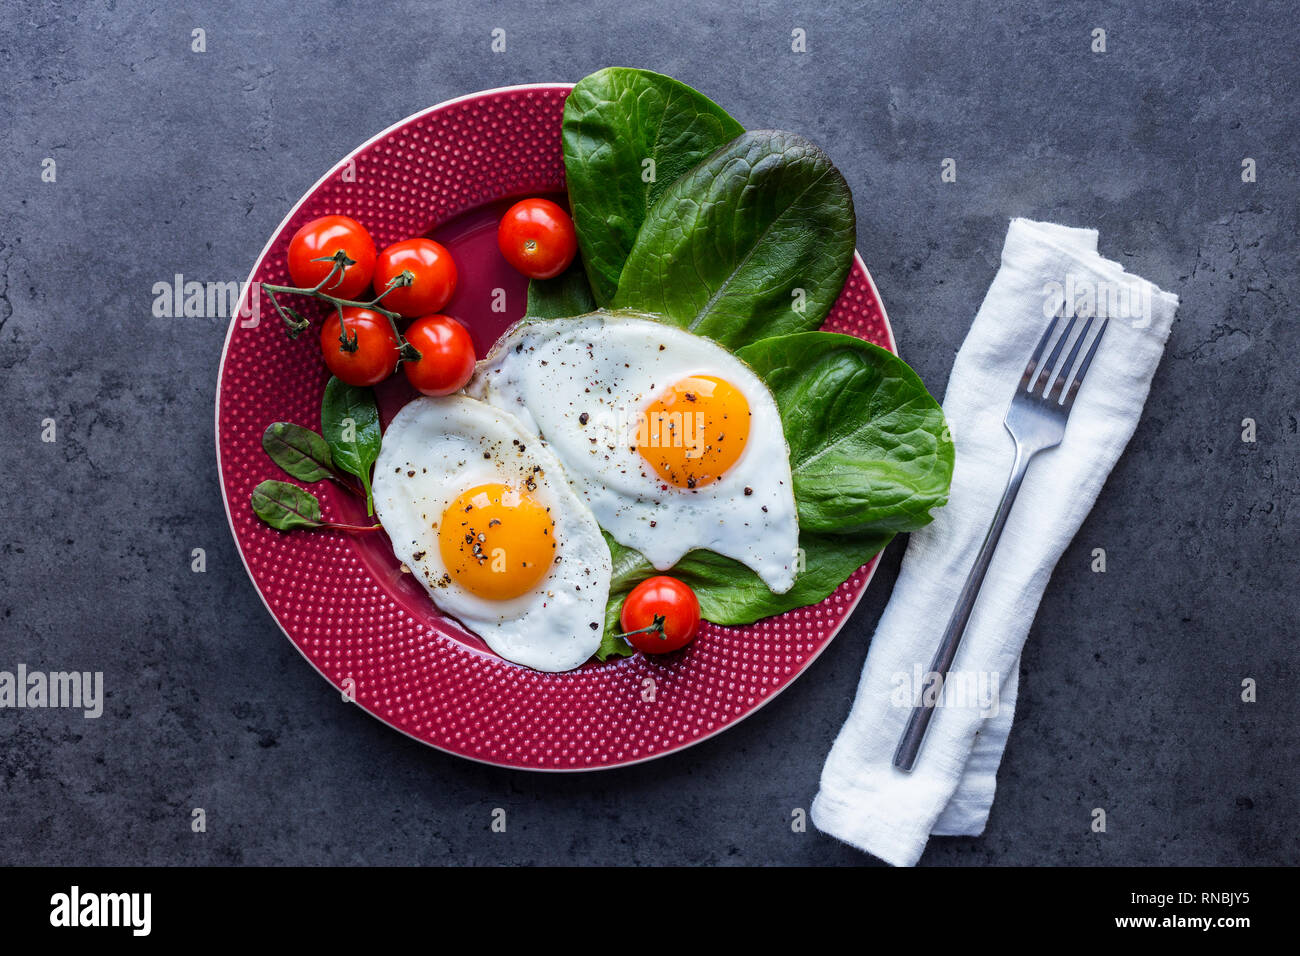 Plat de service avec les œufs, la salade et les tomates, fourchette et serviette à fond noir. Vue de dessus, la couverture pour le magazine Banque D'Images